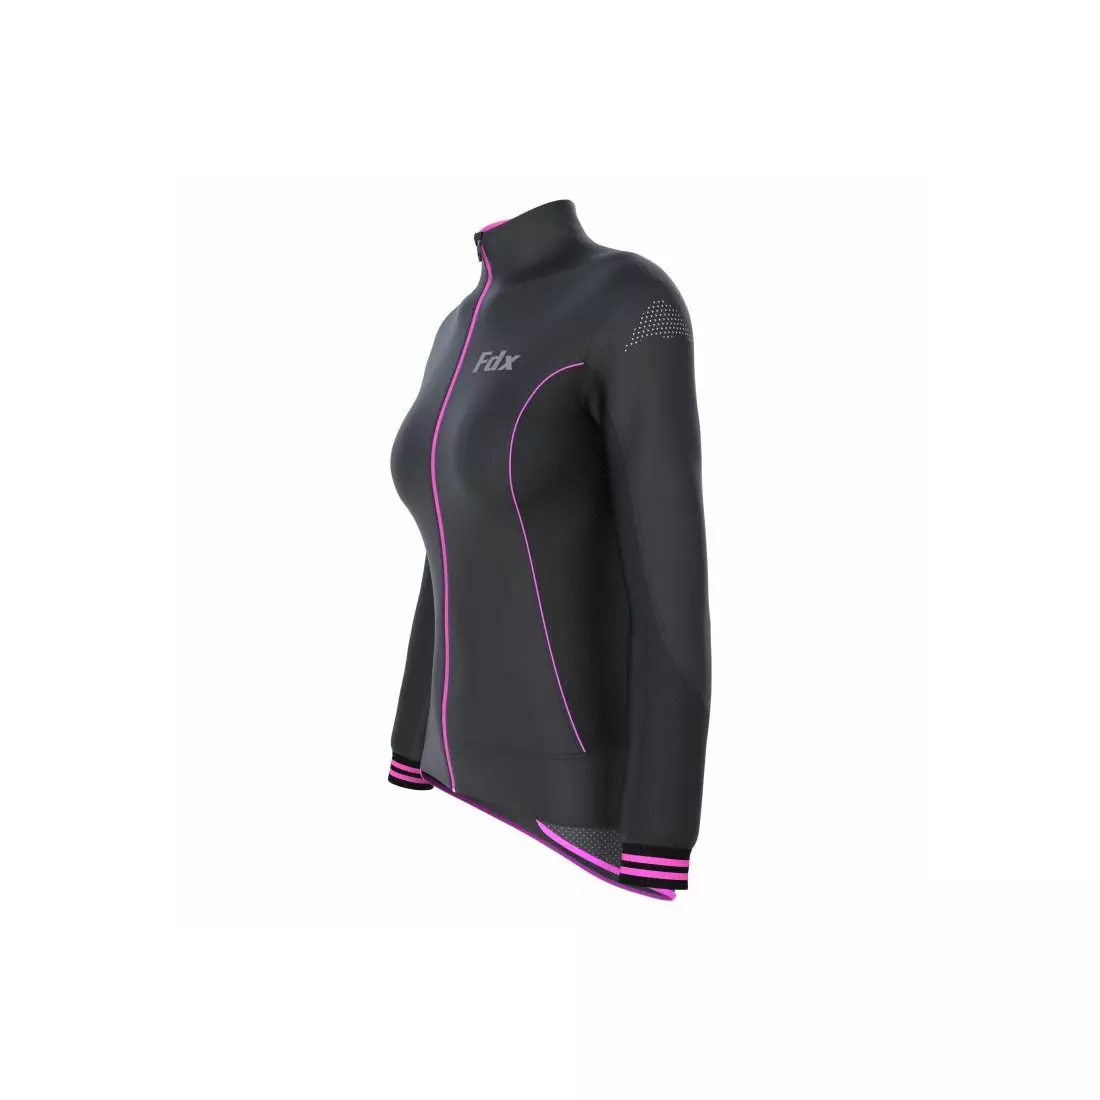 FDX 1310 női szigetelt kerékpáros kabát, fekete és rózsaszín